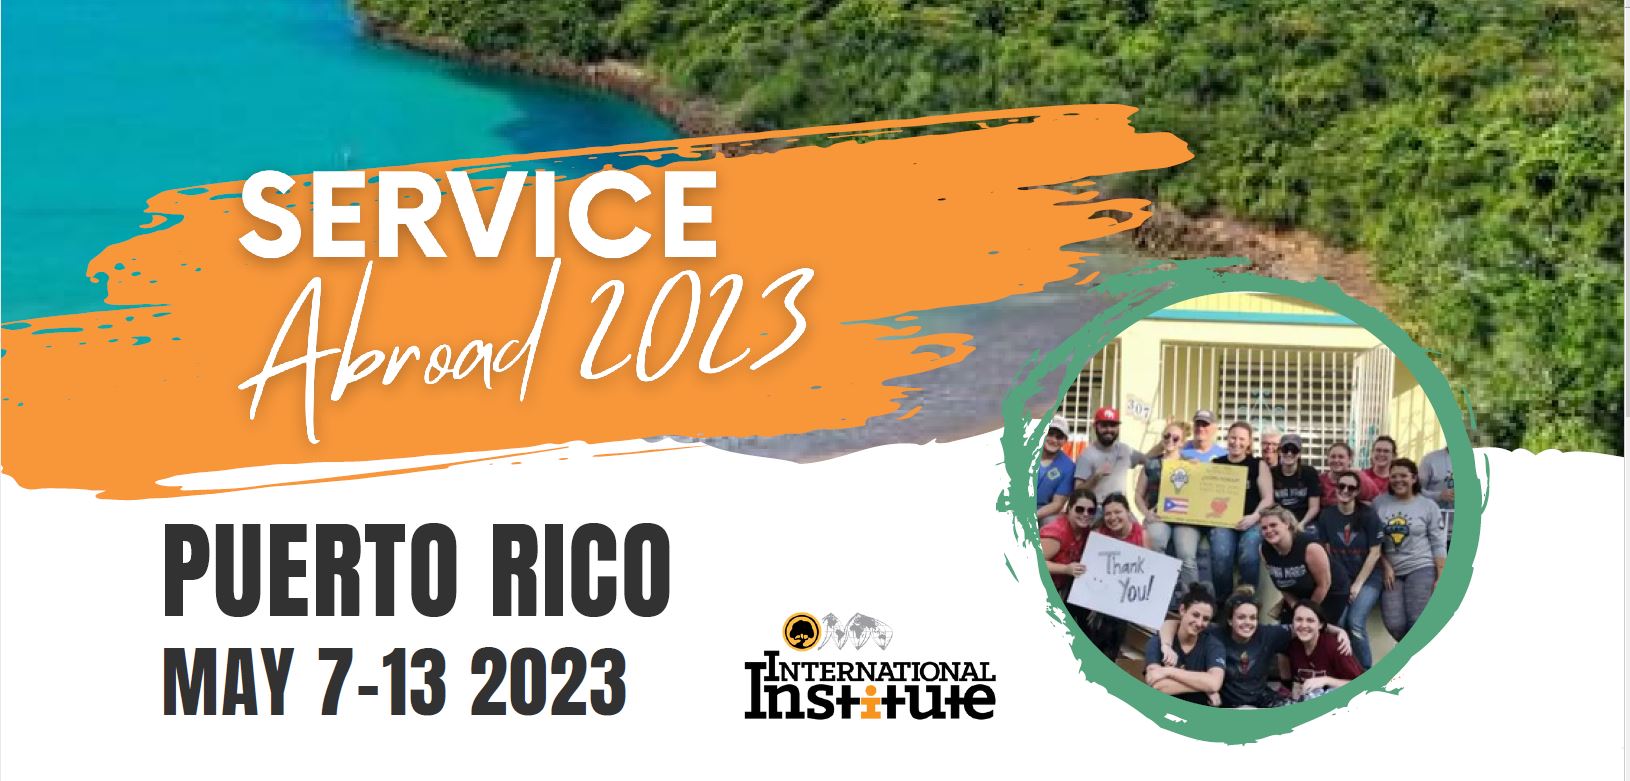 Service Aboard 2023 Puerto Rico